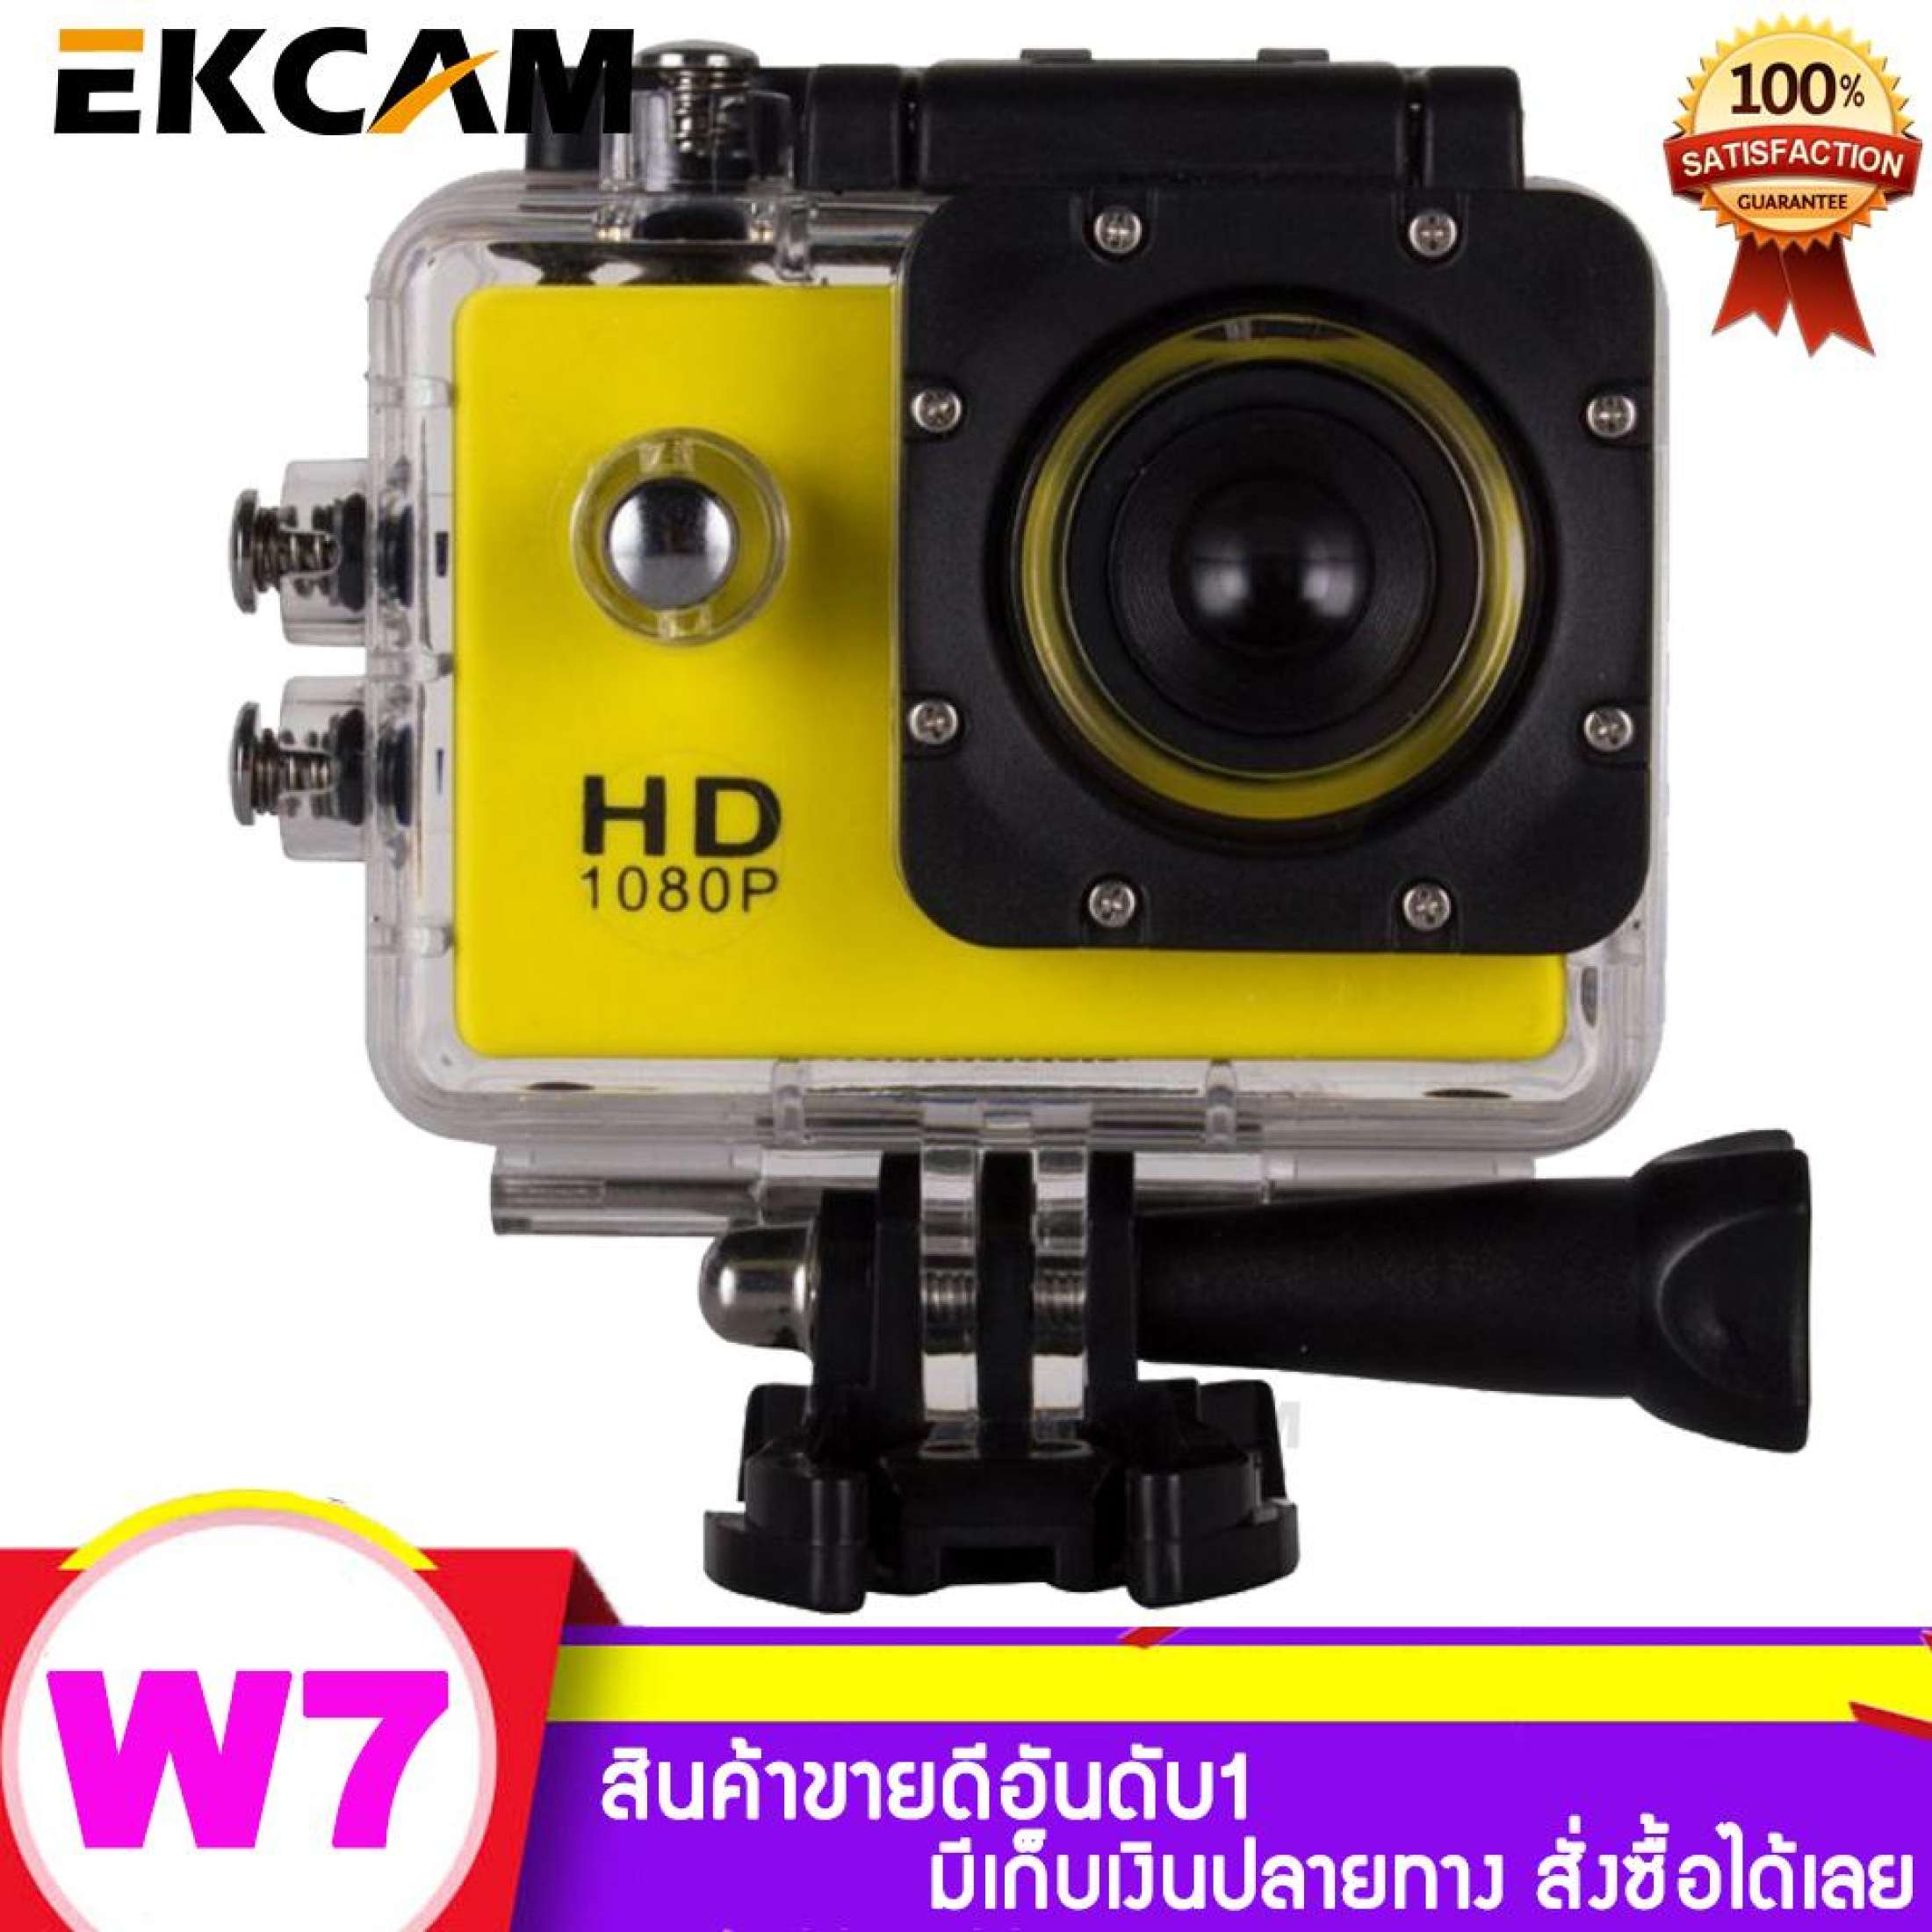 กล้องโกโปร W7 กล้องกันน้ำ HD 1080P GoPro กล้อง Action Camera กล้องแอ็คชั่นเเคม กล้องติดหมวก กล้องติดจักรยาน พร้อมเคสกันน้ำ 30เมตร